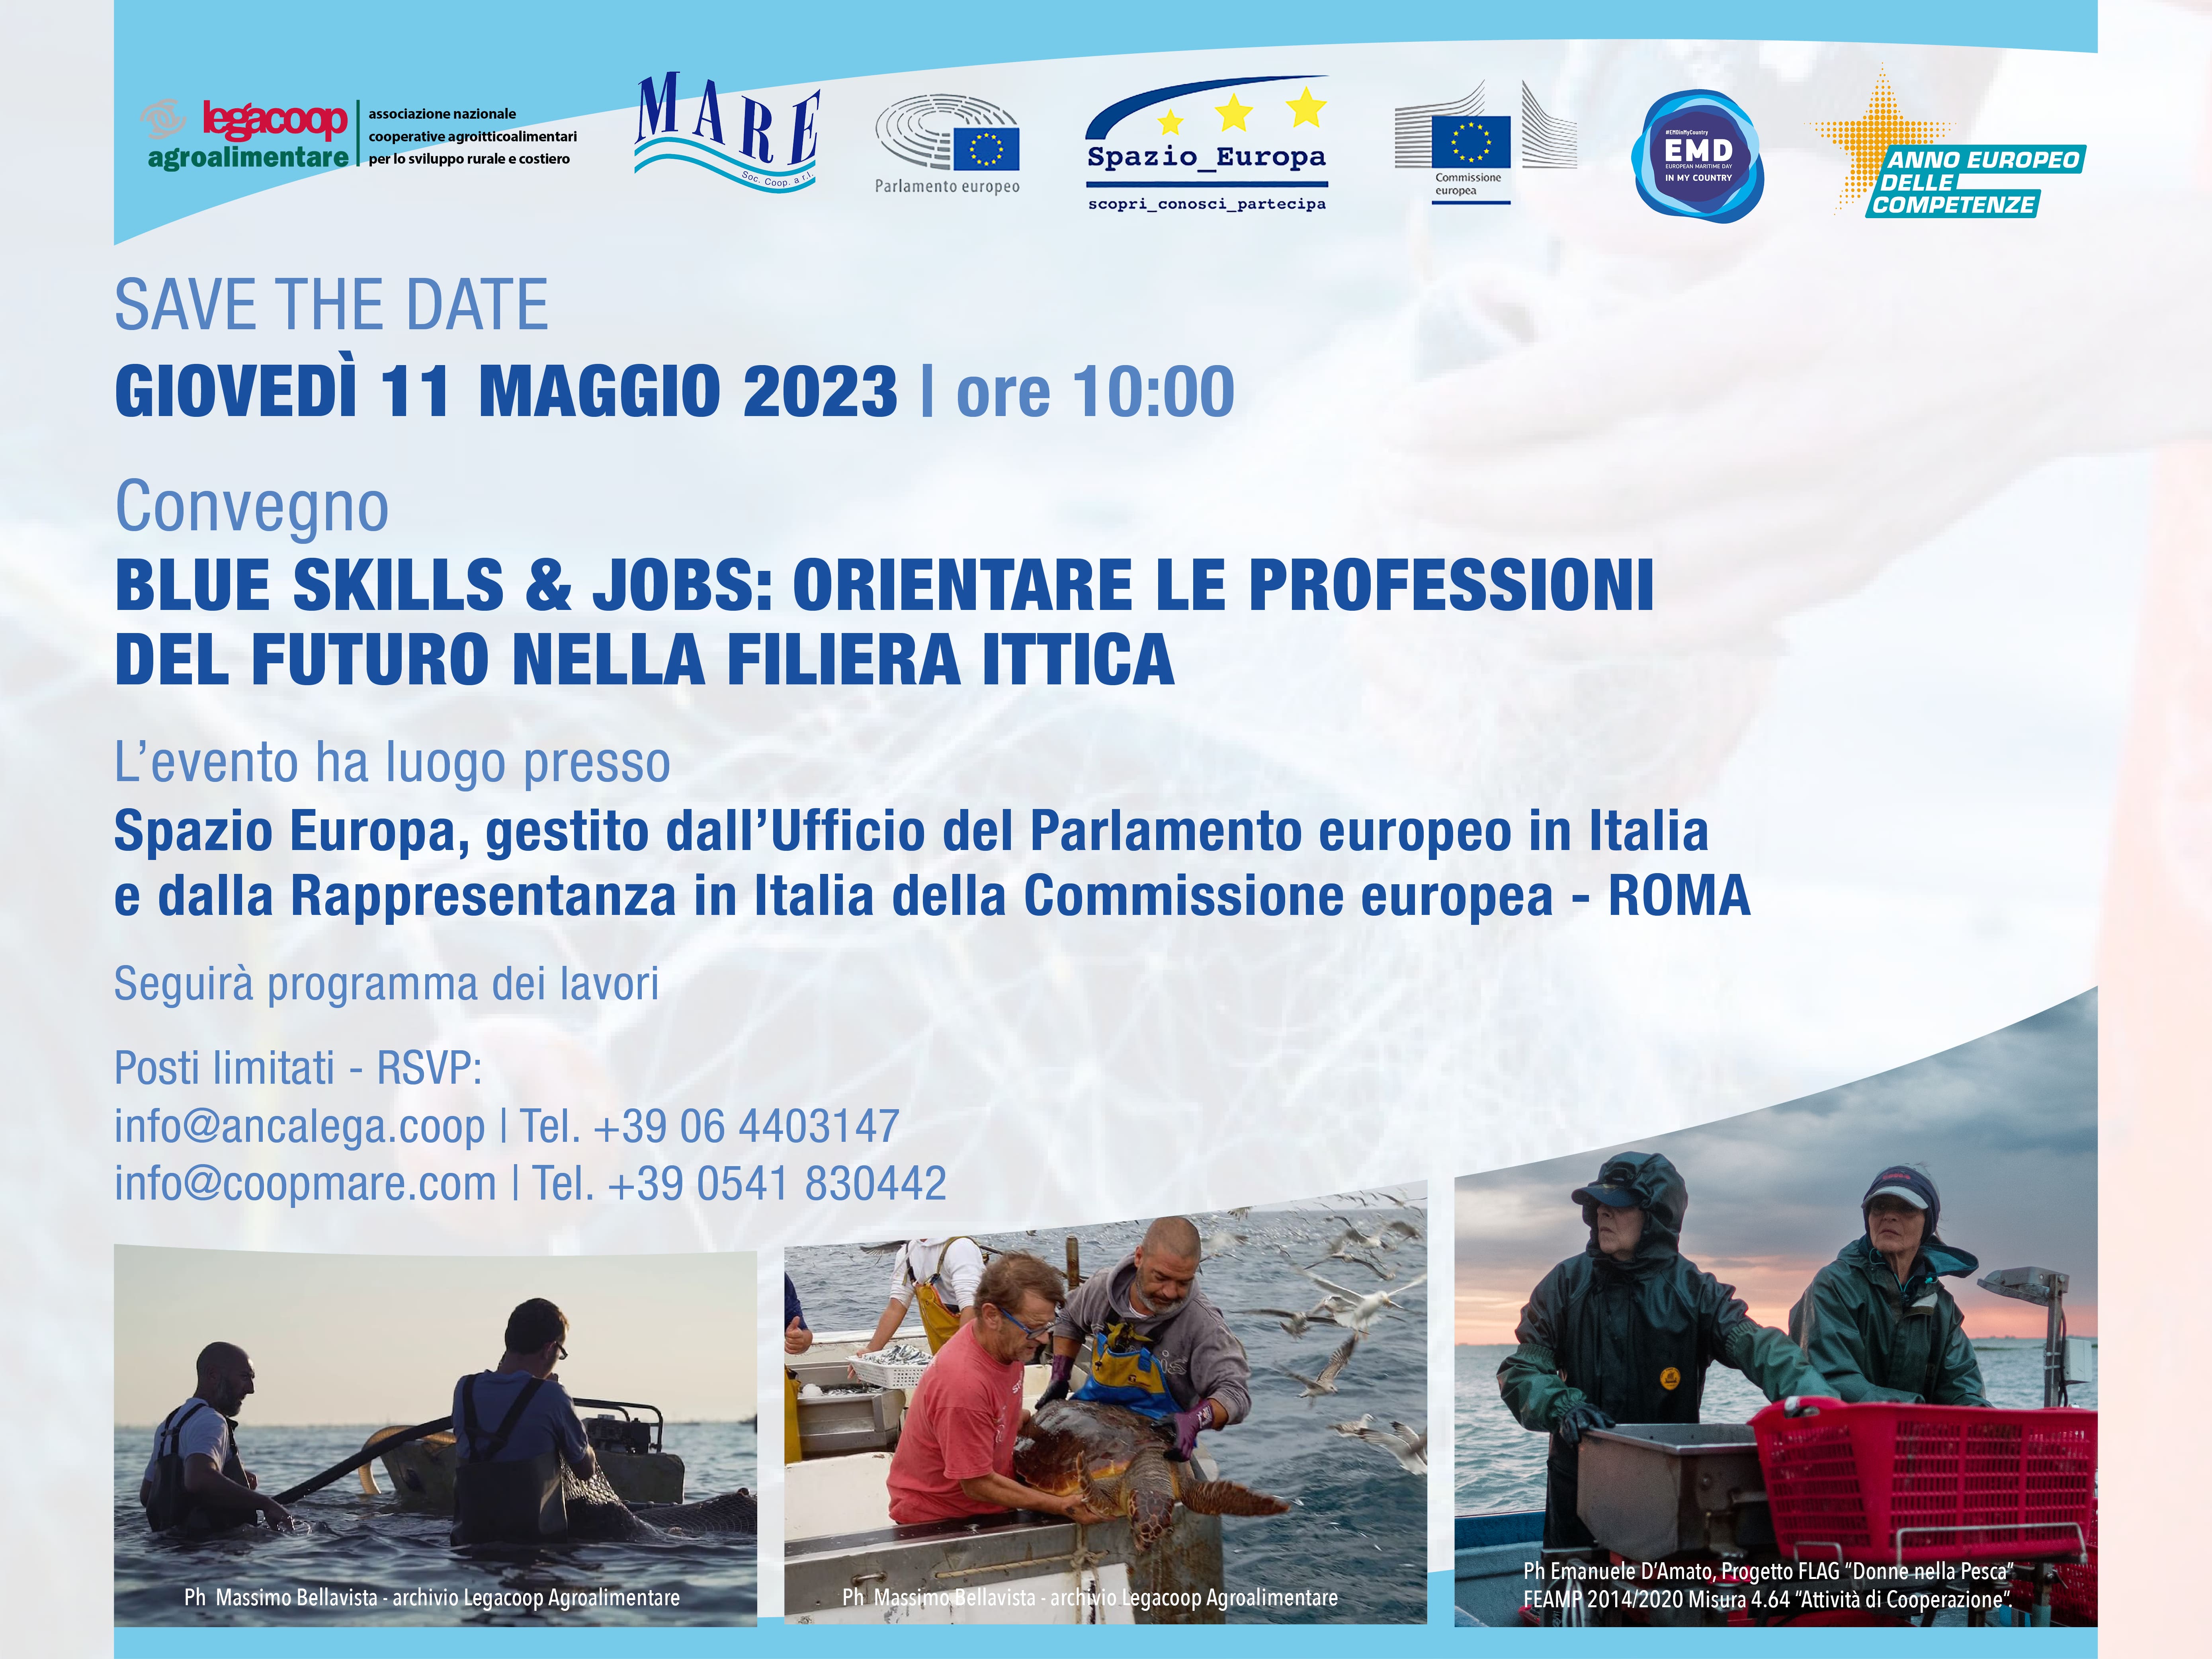 Pesca: Alleanza Cooperativa, con quote giù produzione made in Italy e aumento import del 30%